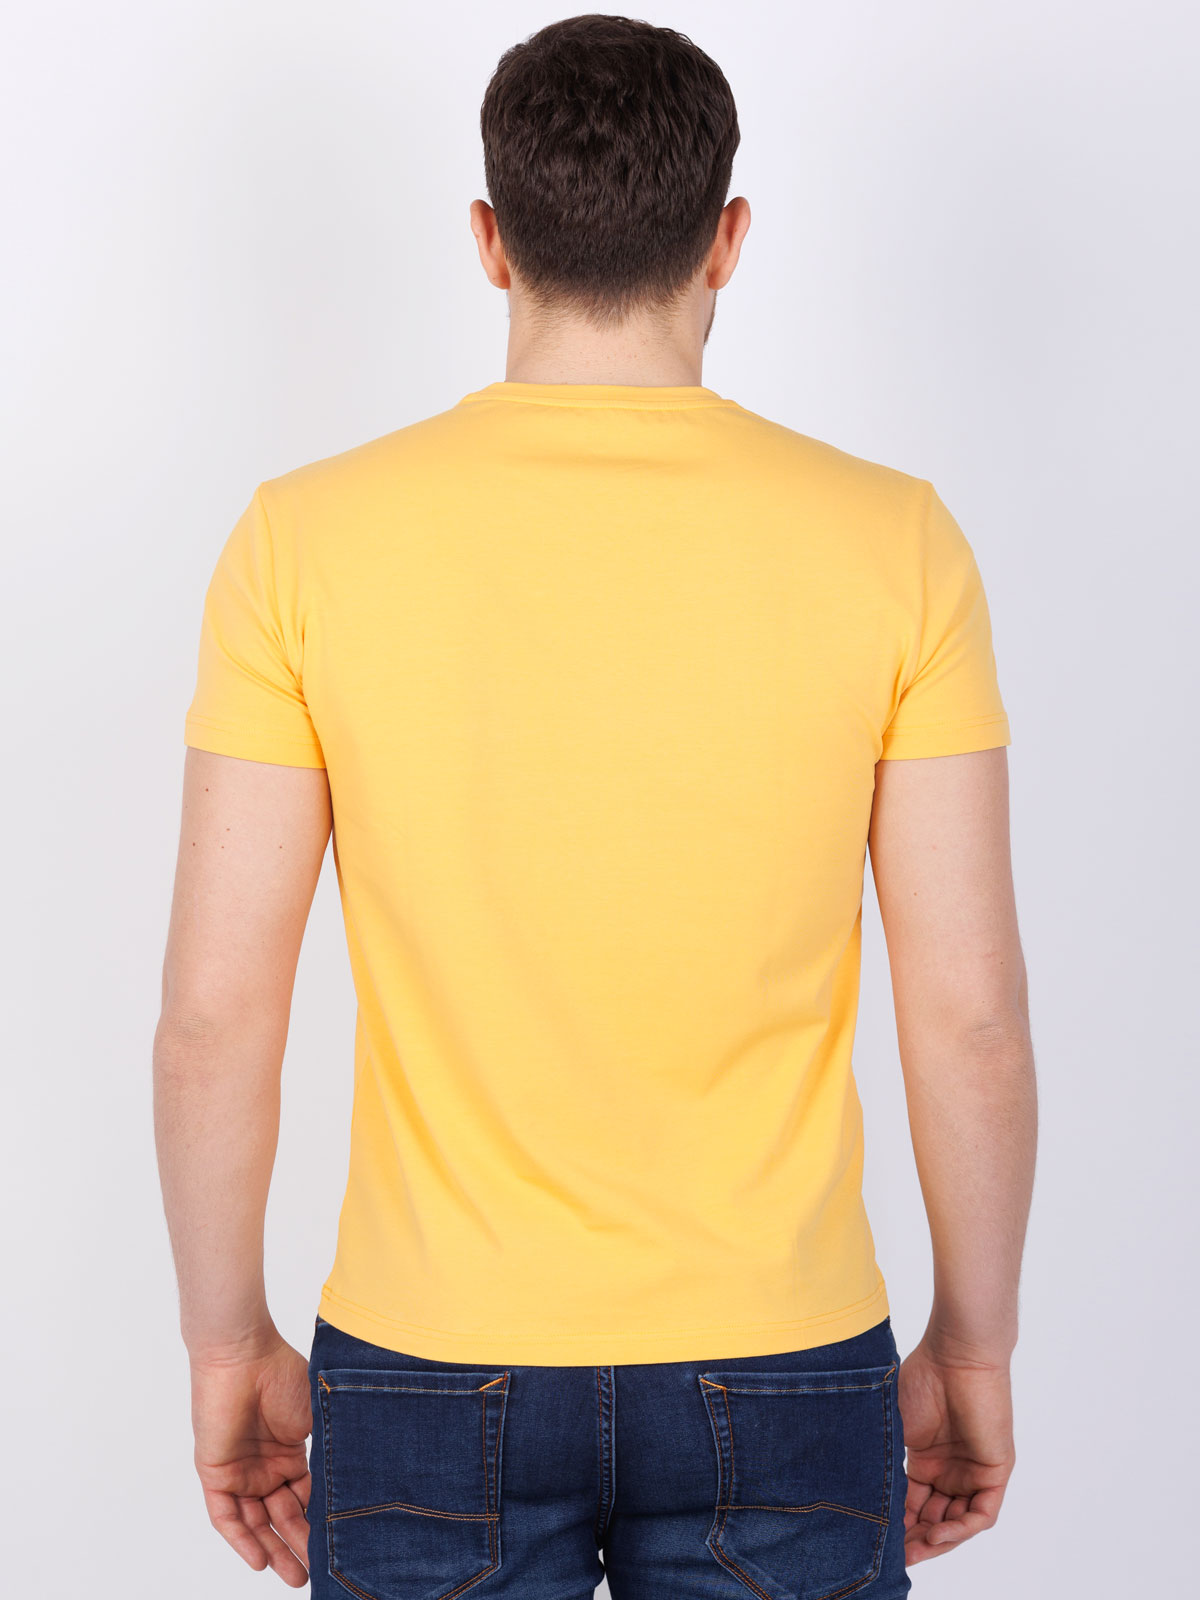 Μπλούζα με κοντά μανίκια σε κίτρινο χρώμ - 96463 € 19.12 img4